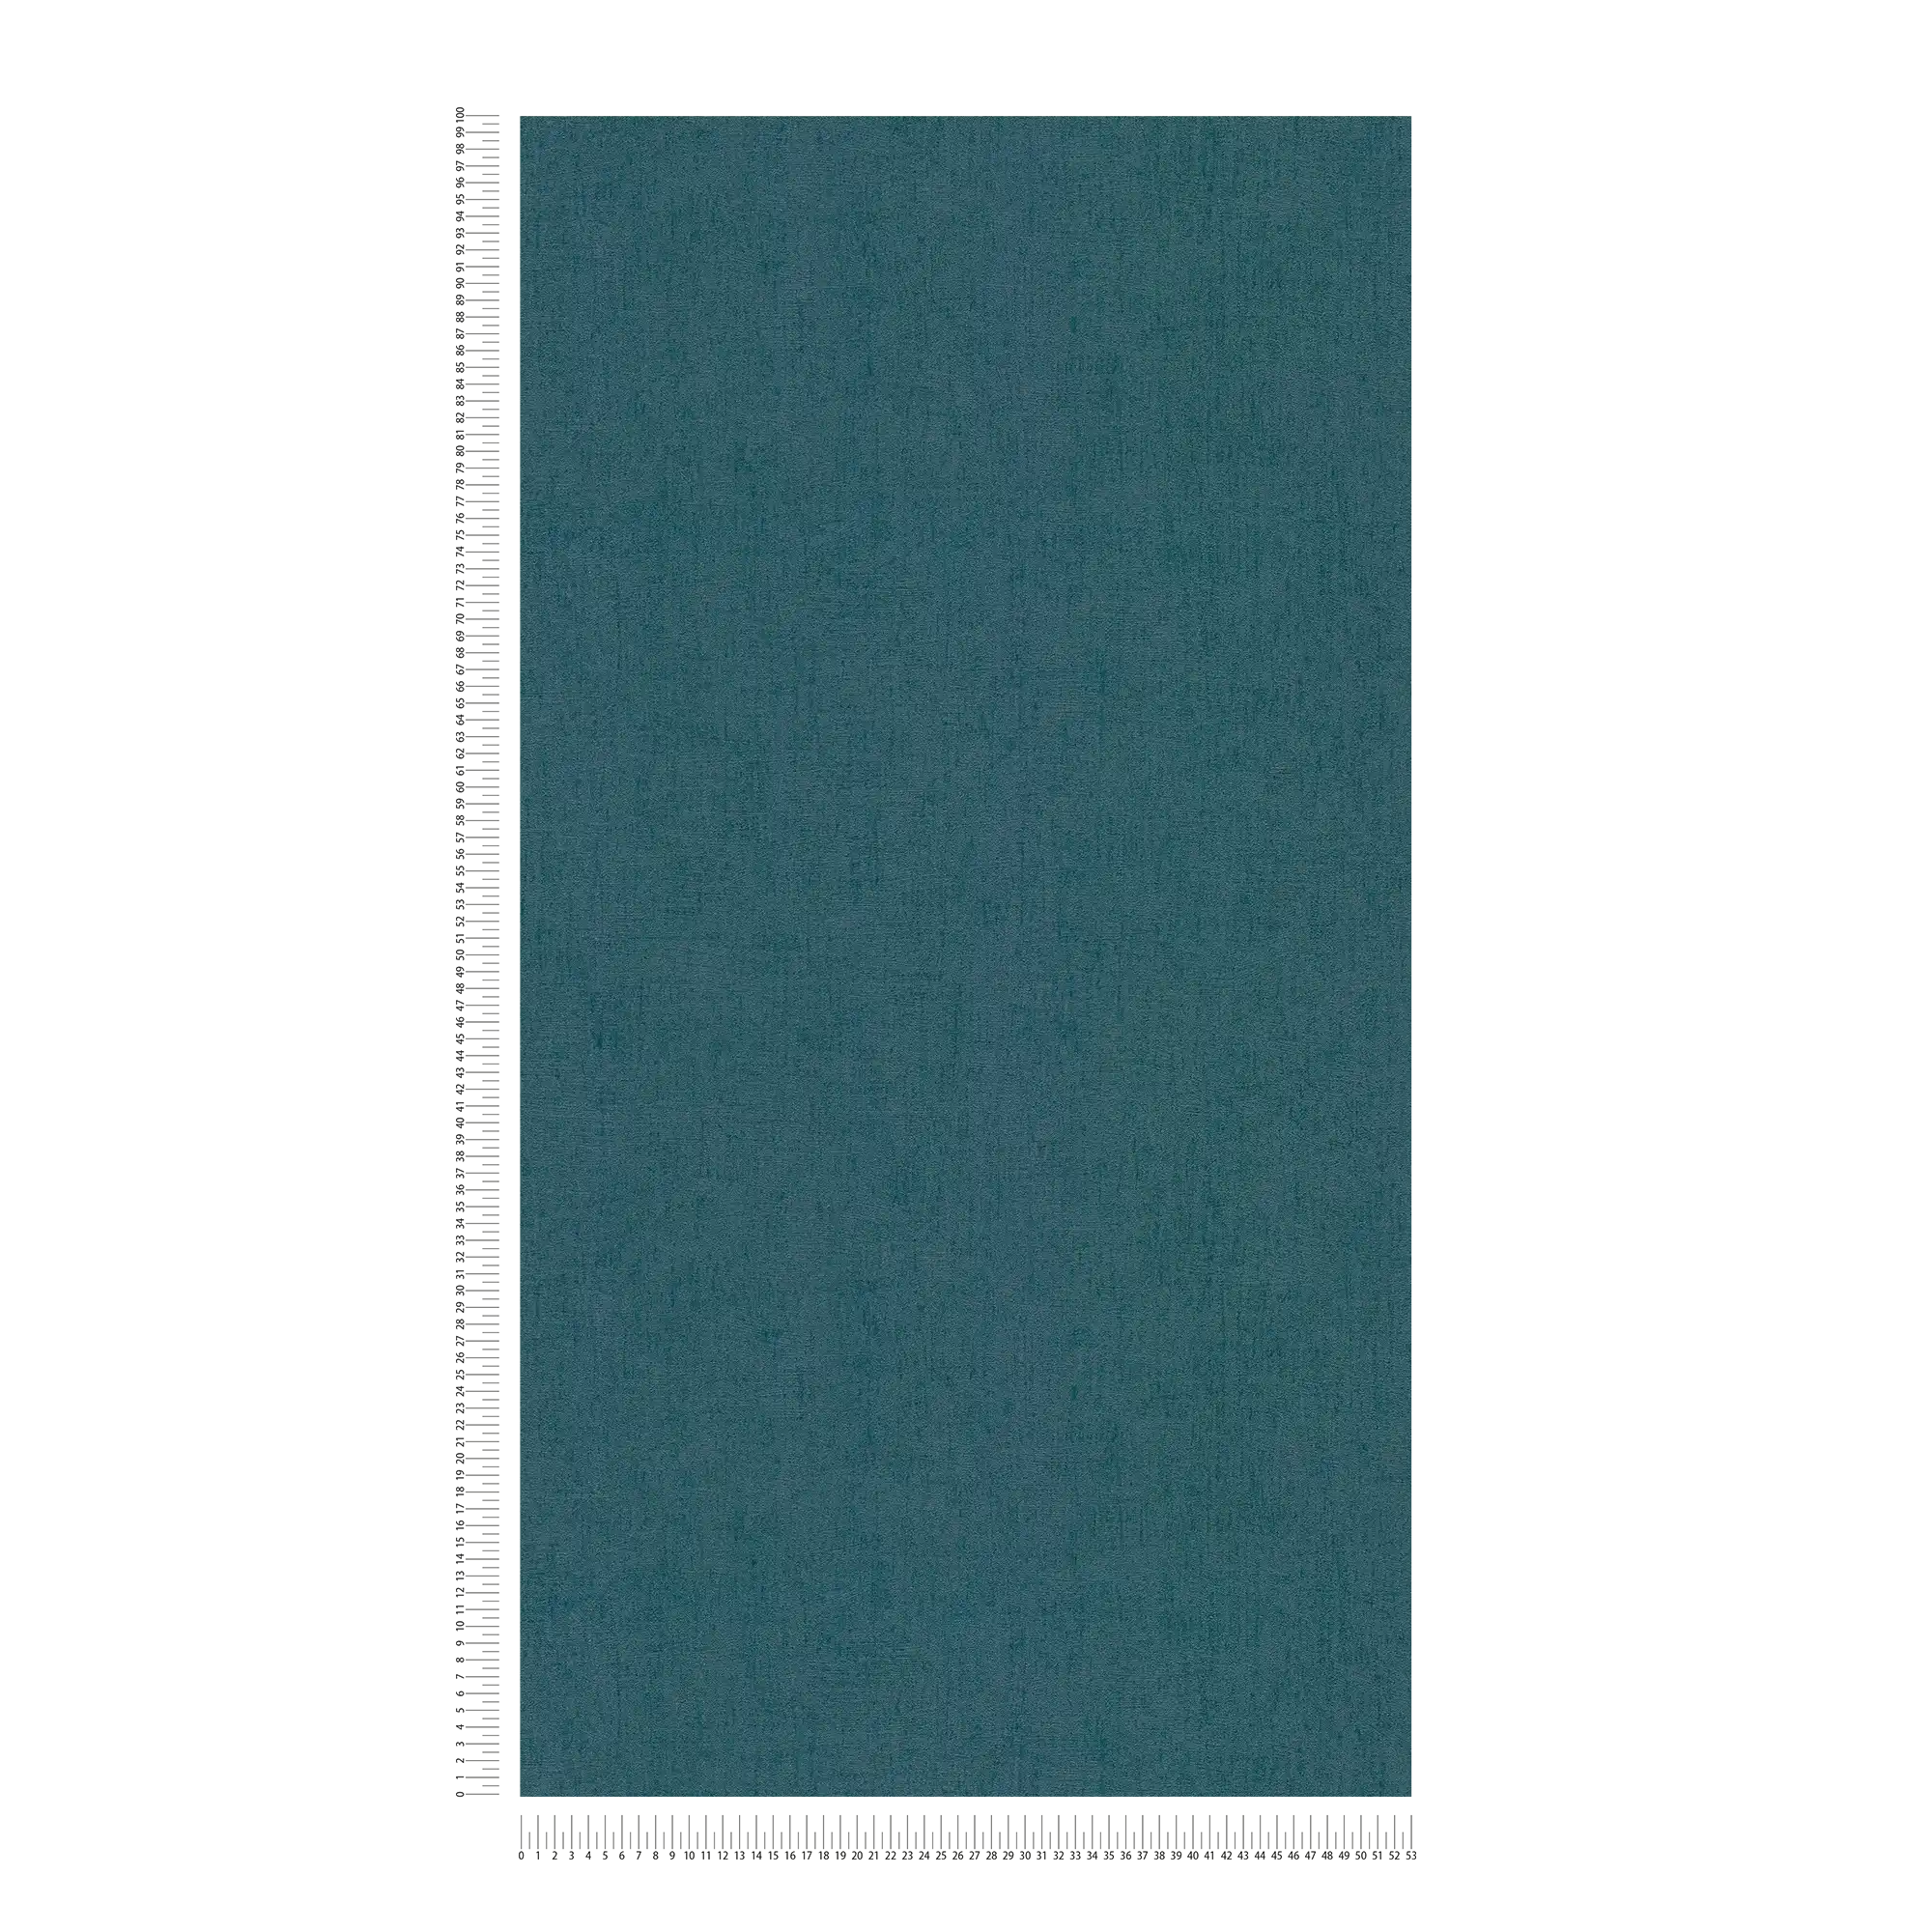             Strukturierte Tapete Petrol mit Glanz Effekt – Blau, Grün, Metallic
        